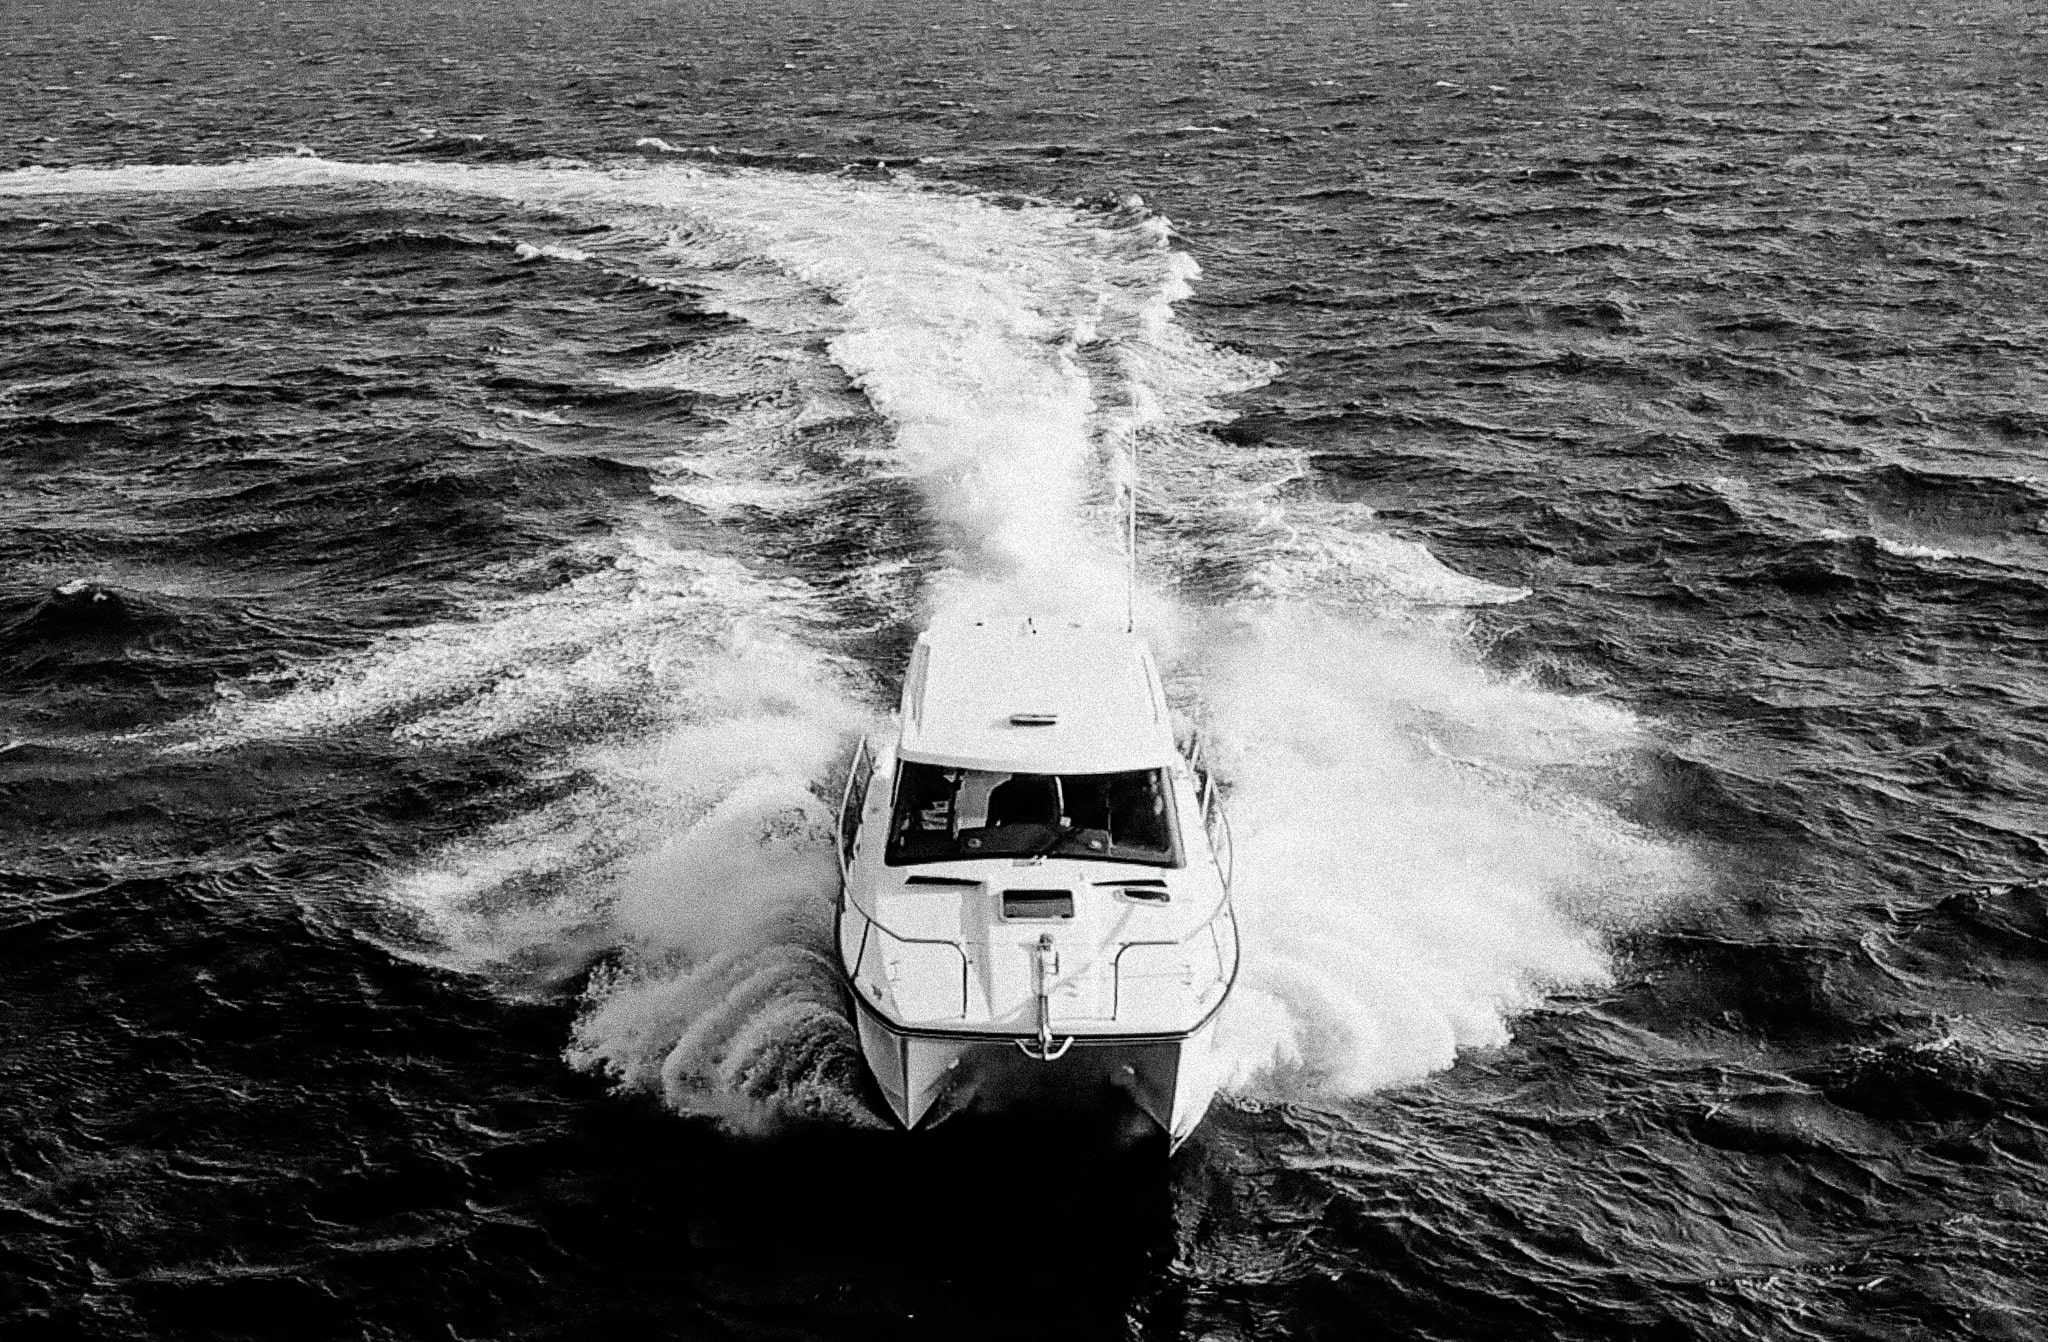 32' power catamaran in rough water